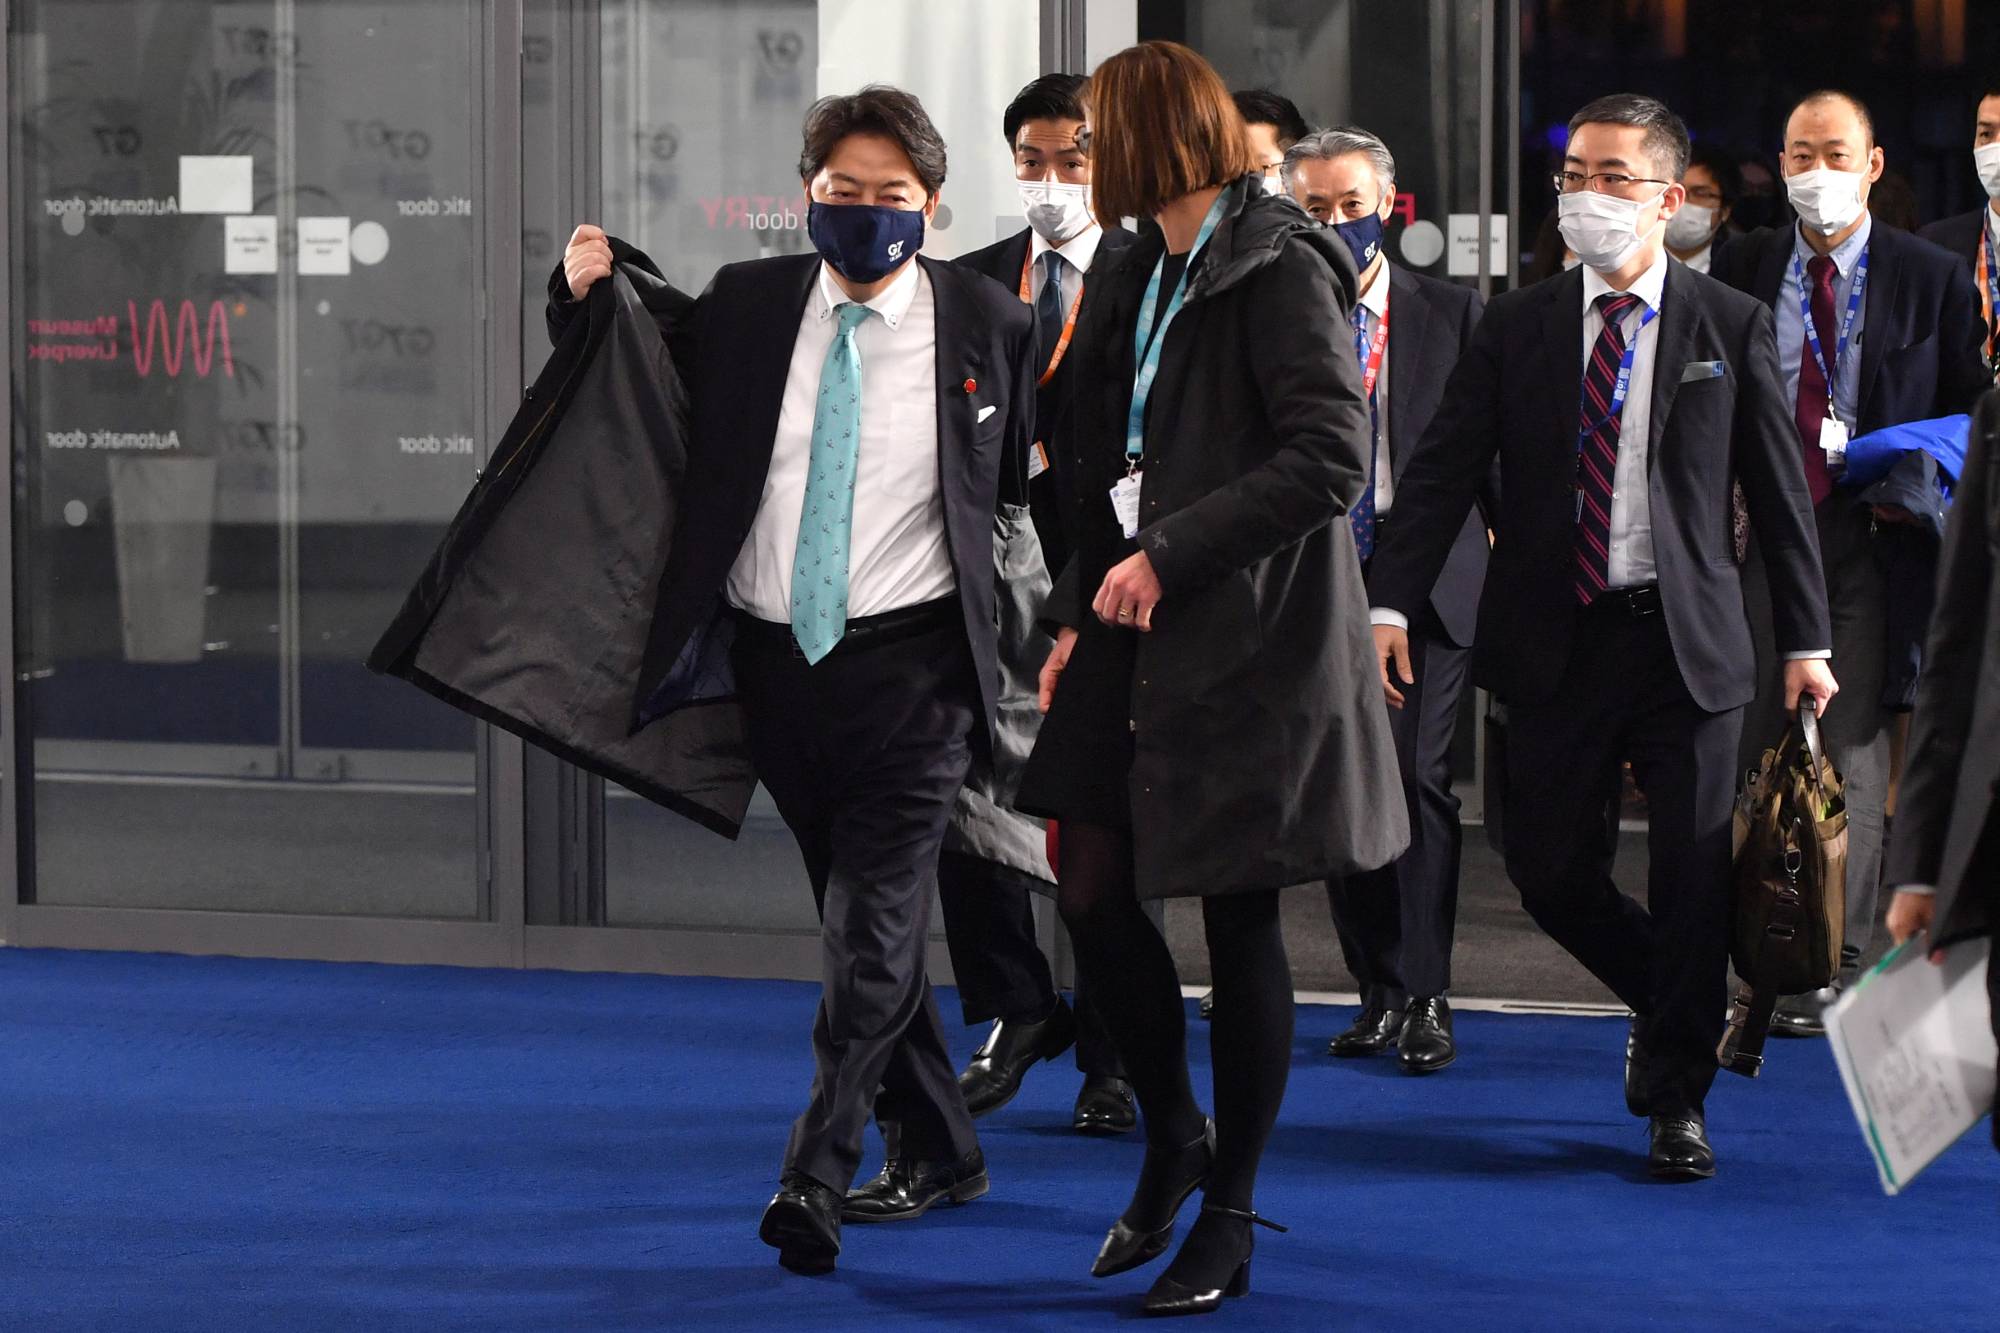 Министр иностранных дел Японии Ёсимаса Хаяси прибыл в последний день встречи министров иностранных дел и развития G7 в Ливерпуль в воскресенье.  |  бассейн / через Reuters